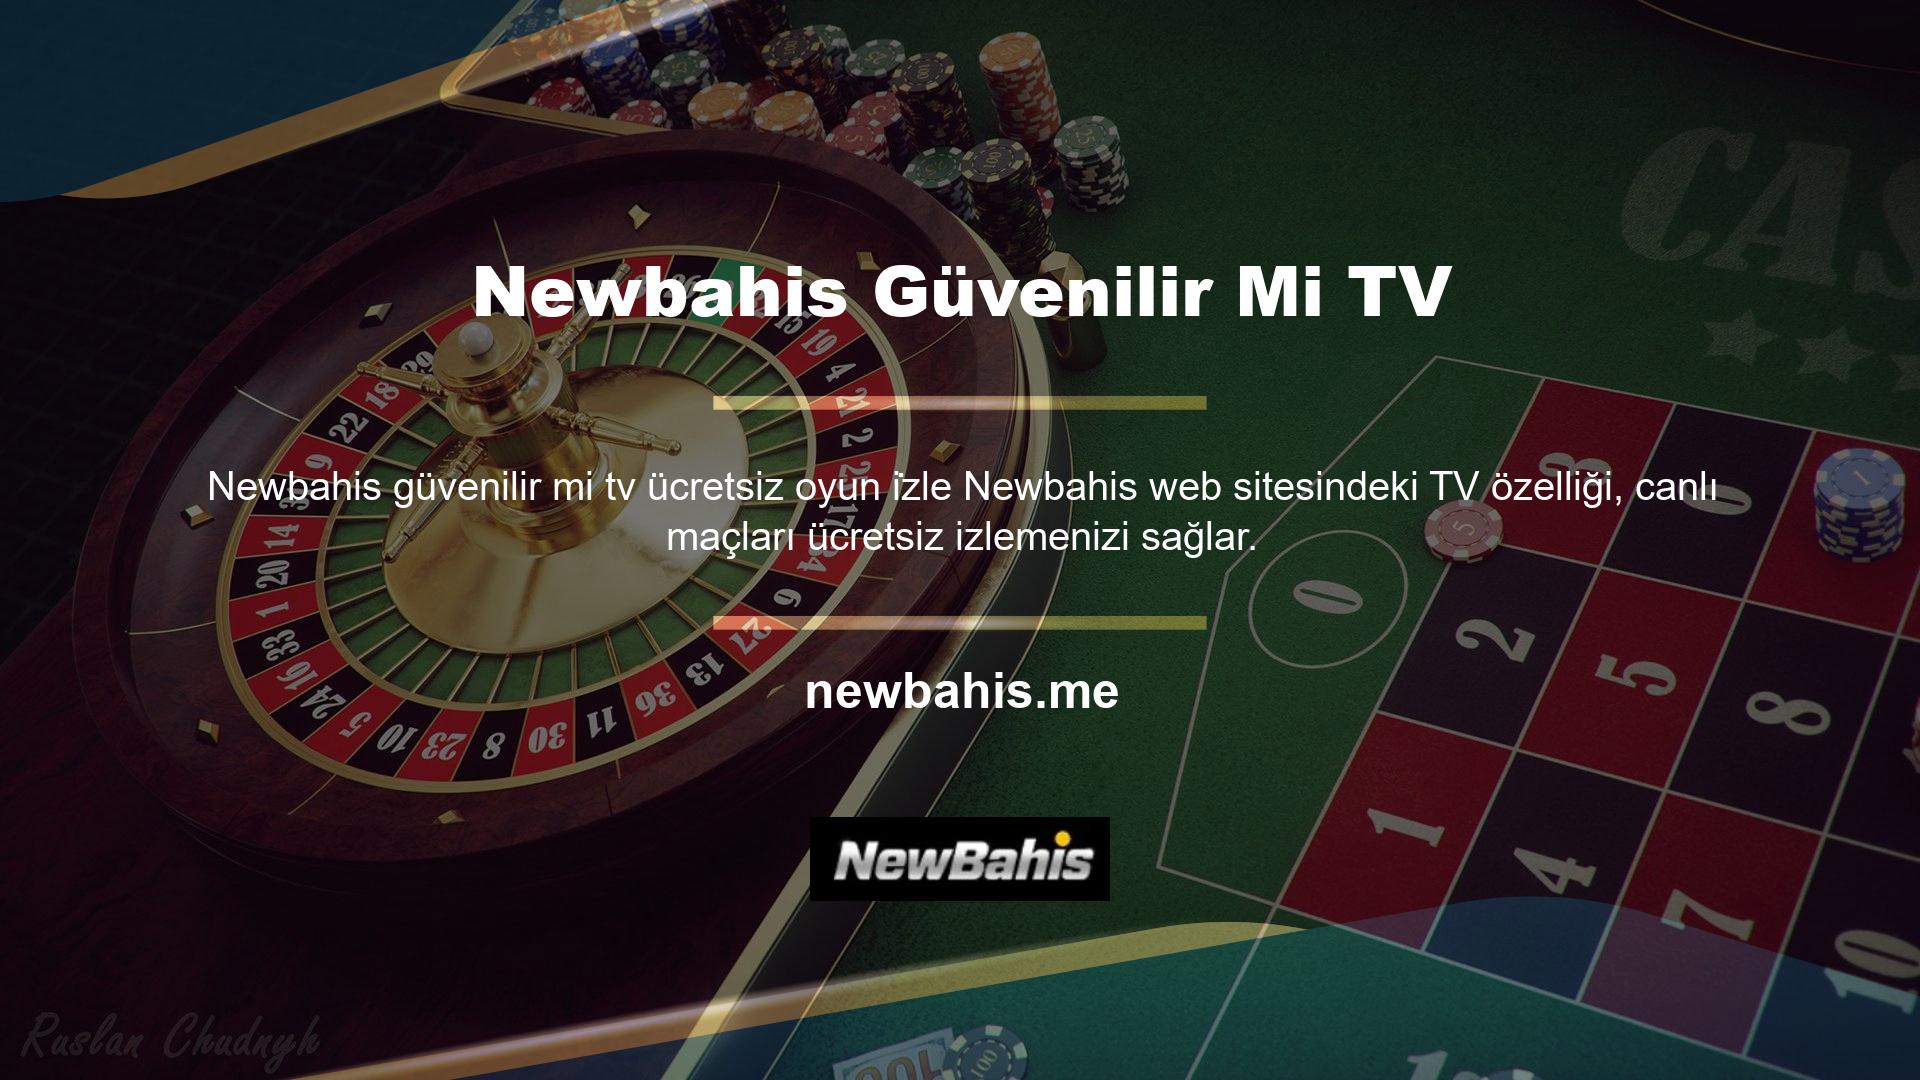 Maçı ücretsiz olarak izleyebileceğiniz yeni adresi "Newbahis TV herkes kullanabilir